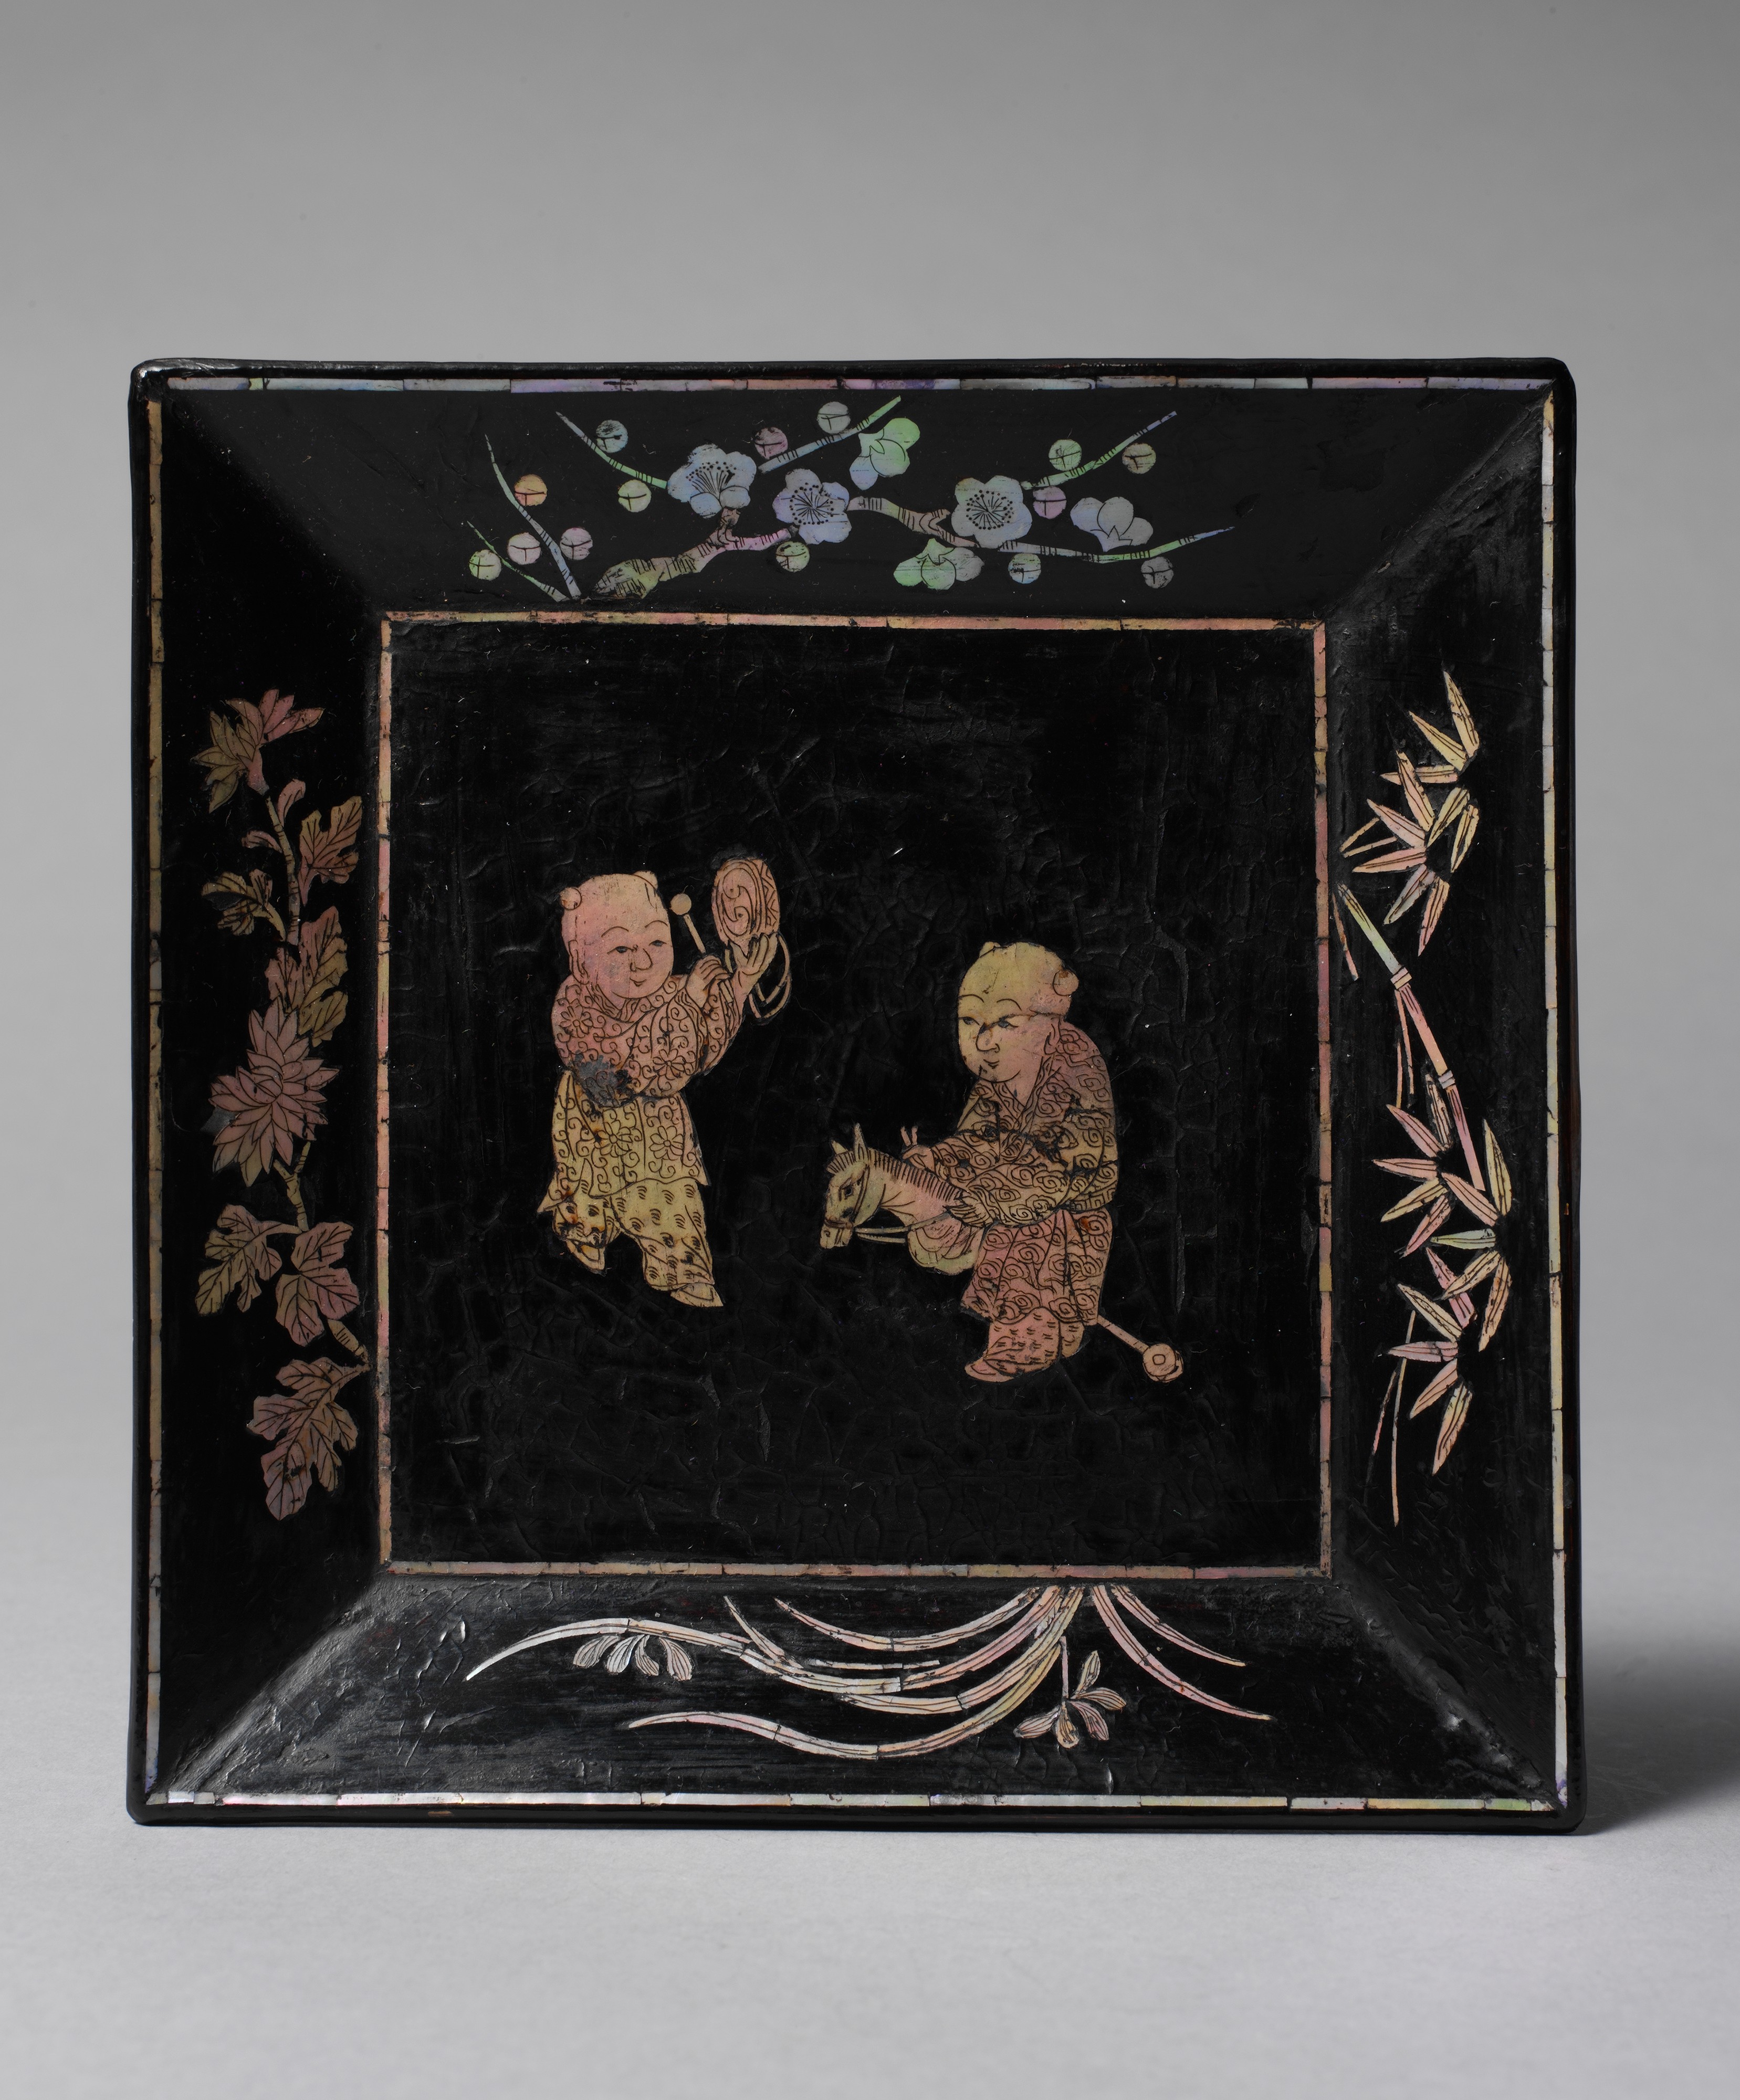 两小童彩碟 by 未知艺术家  - 16世纪 - 1.9 x 14.3 x 14.3 cm 